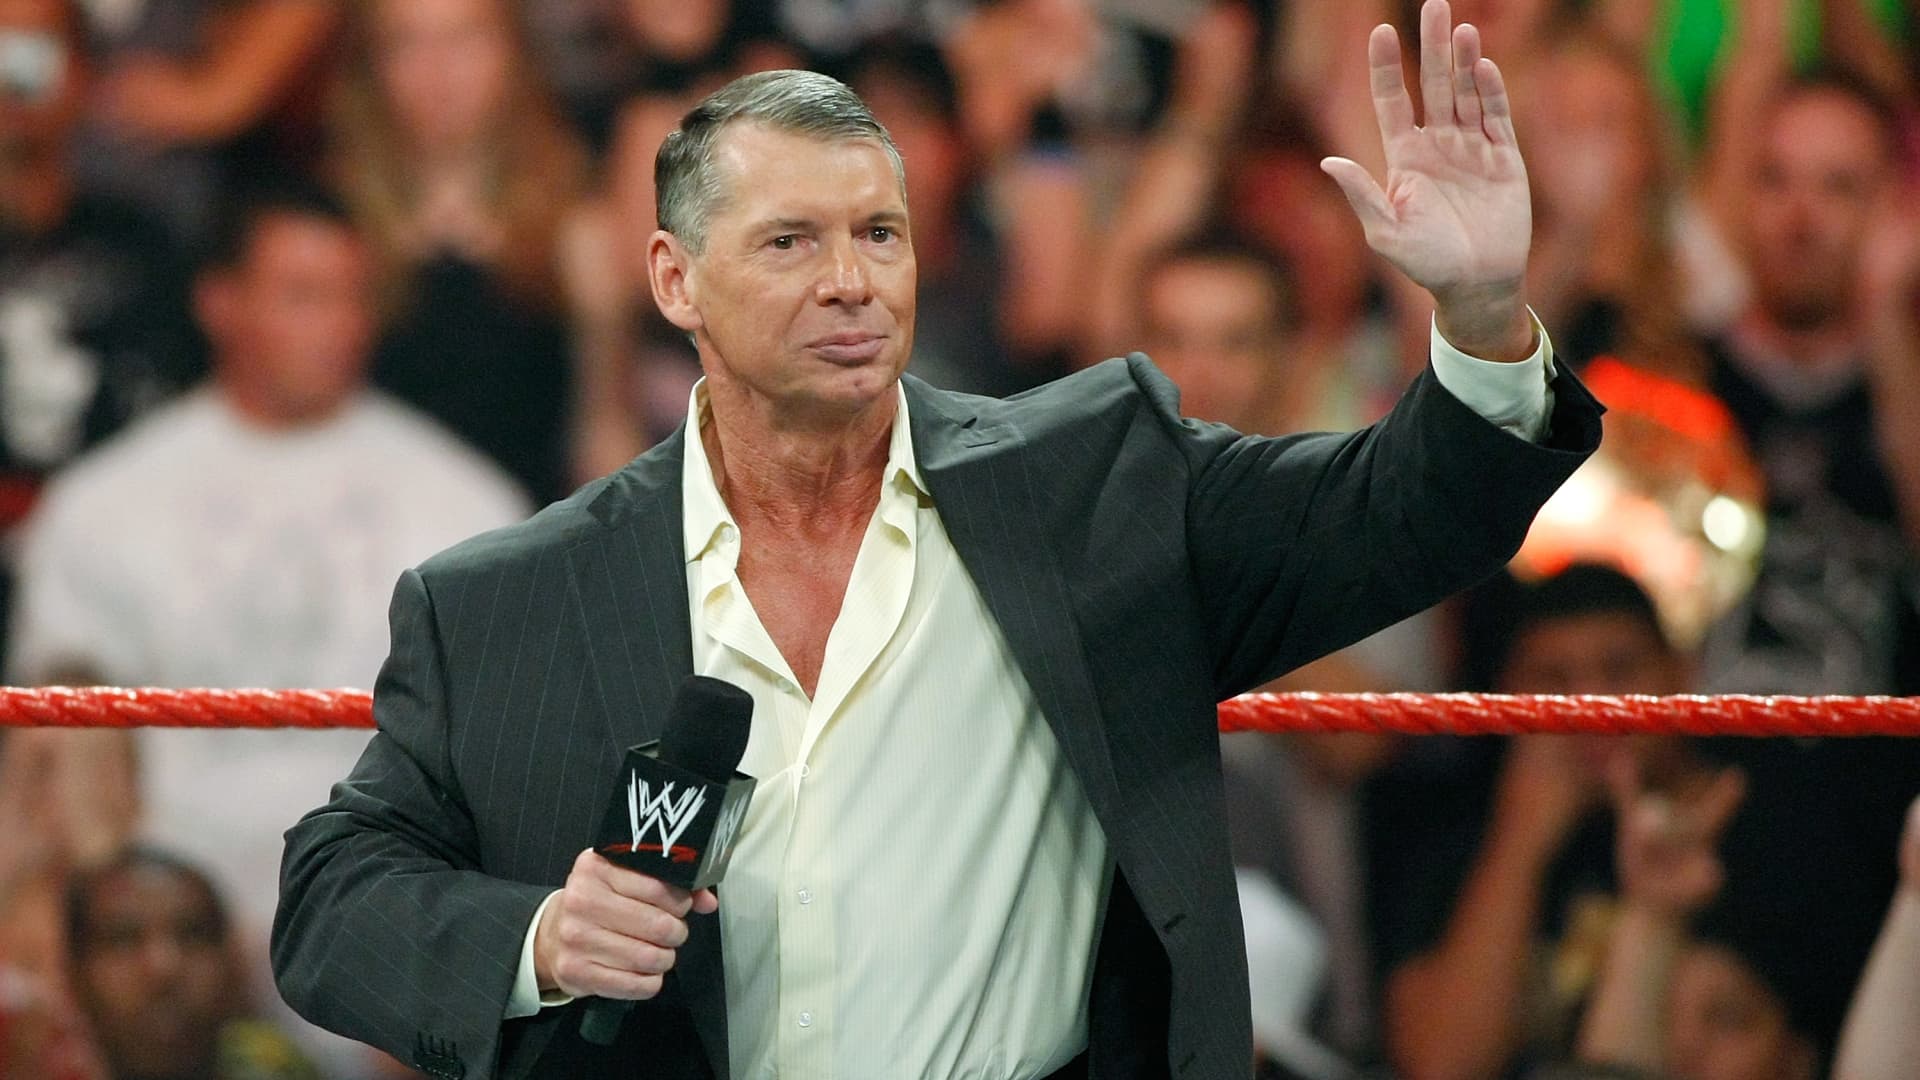 WWE bevestigt dat Vince McMahon zal terugkeren naar de raad van bestuur, aandelen stijgen